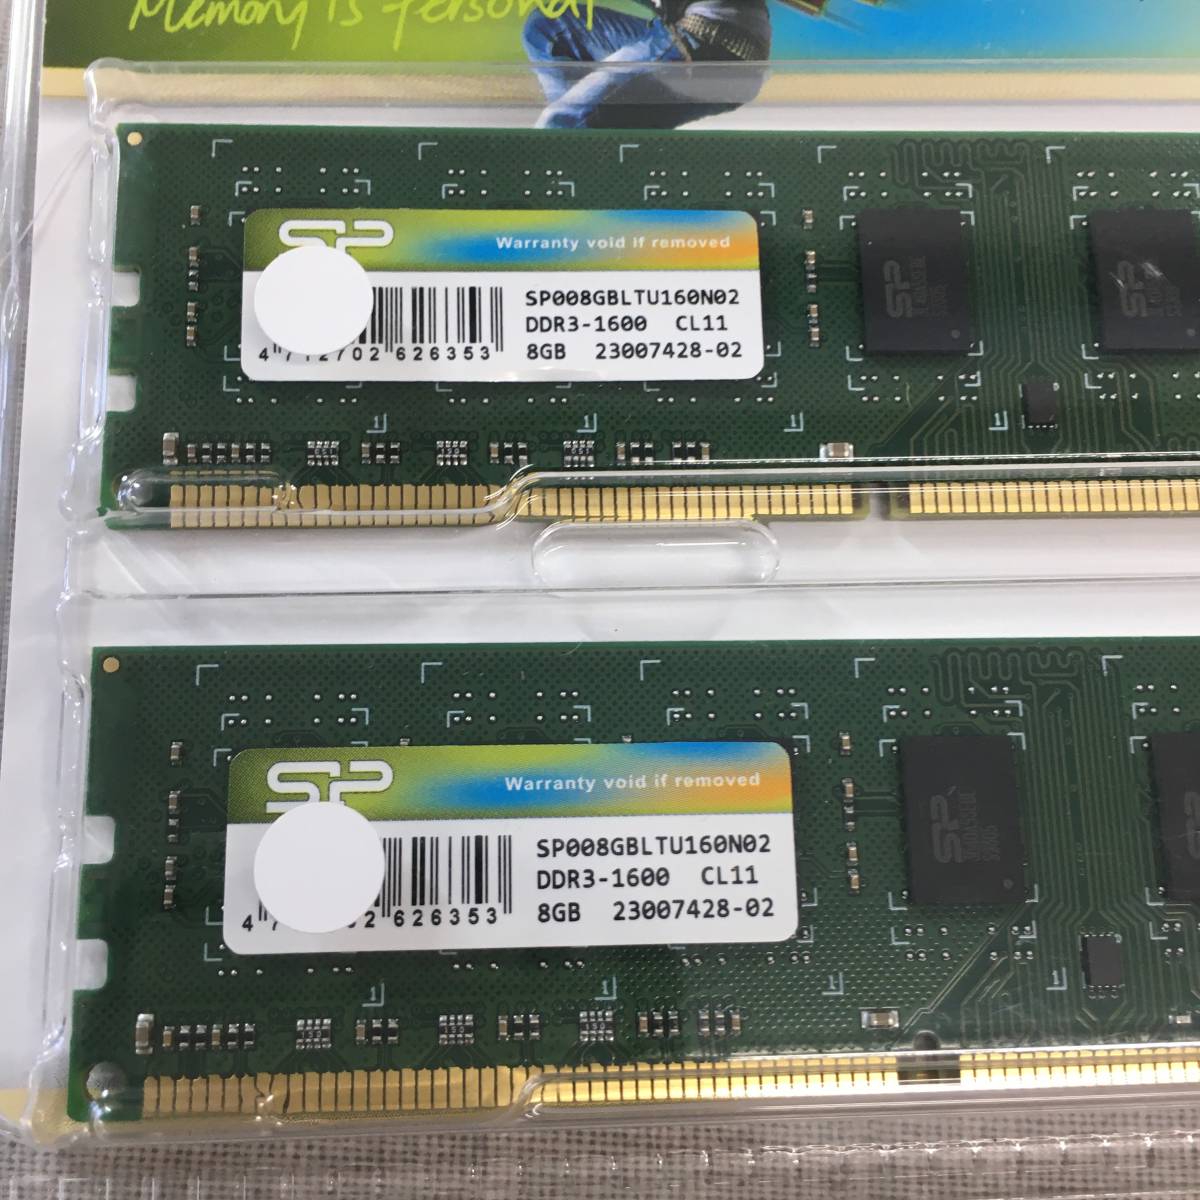 シリコンパワー デスクトップPC用メモリ  DDR3-1600  4GB×4枚